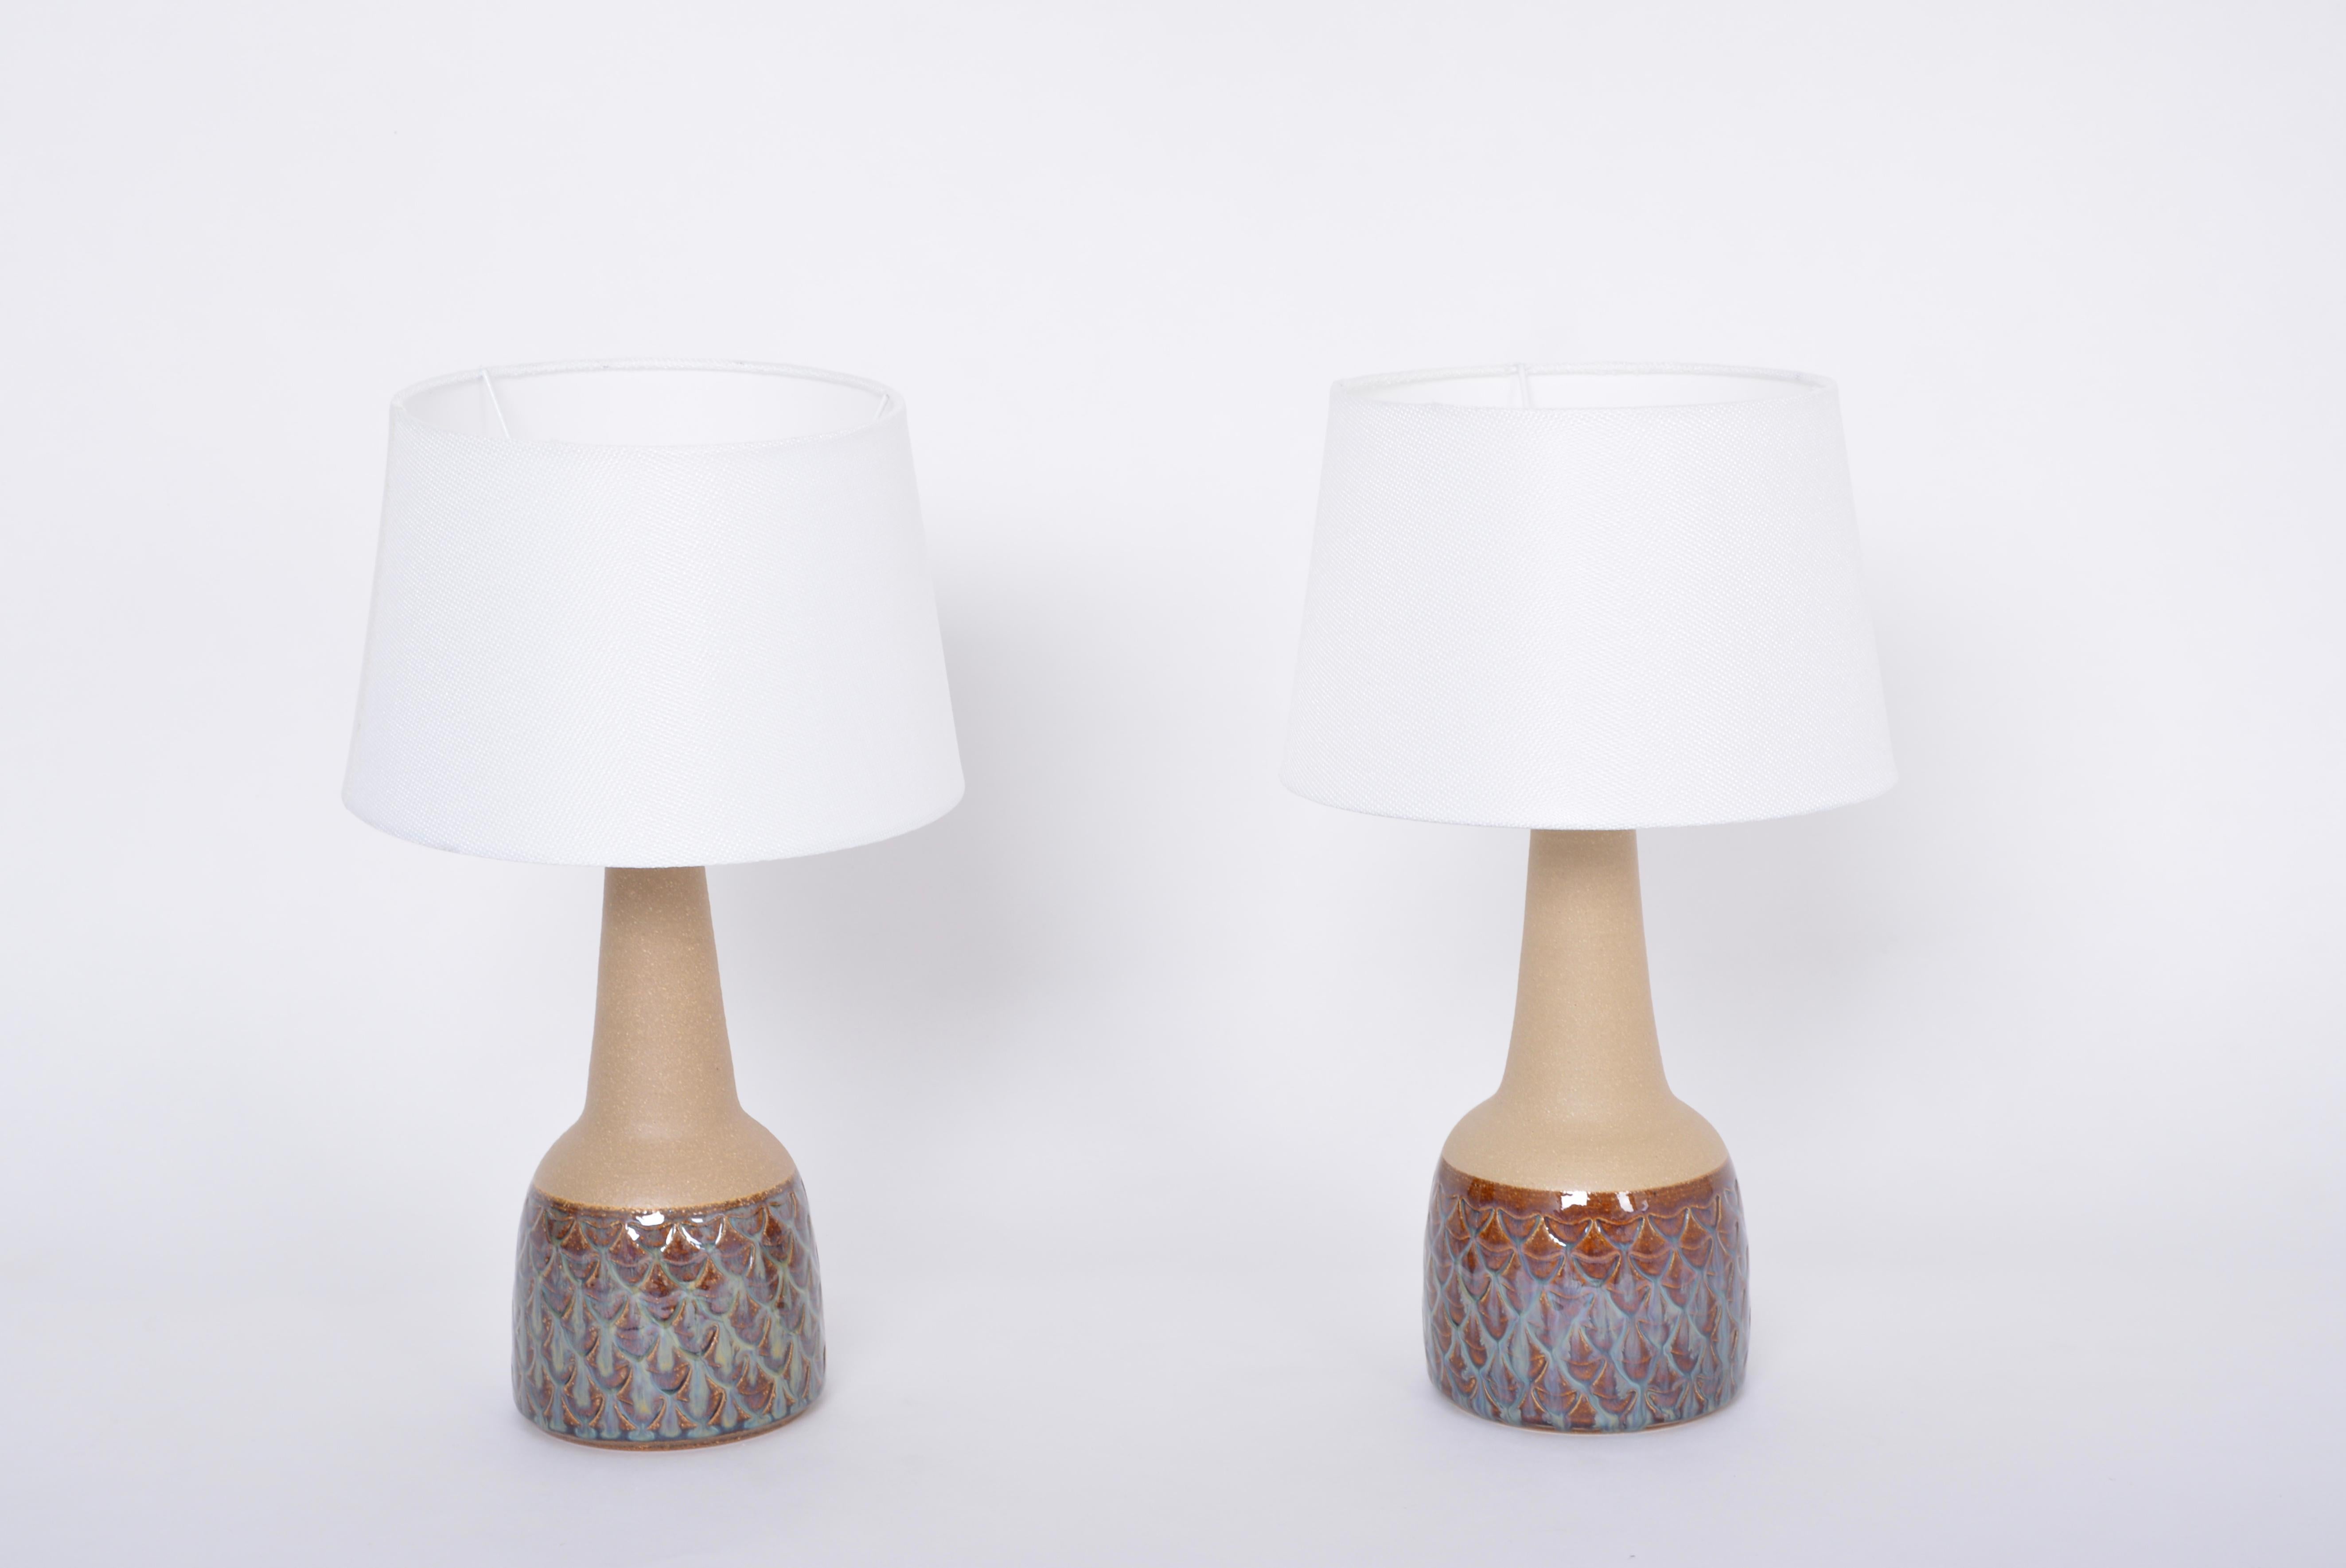 Ein Paar handgefertigte Tischlampen aus der Mitte des Jahrhunderts, Modell 3012, von Einar Johansen für Soholm

Dieses Paar Tischlampen aus Steinzeug wurde von Einar Johansen entworfen und in den 1960er Jahren auf der dänischen Insel Bornholm von